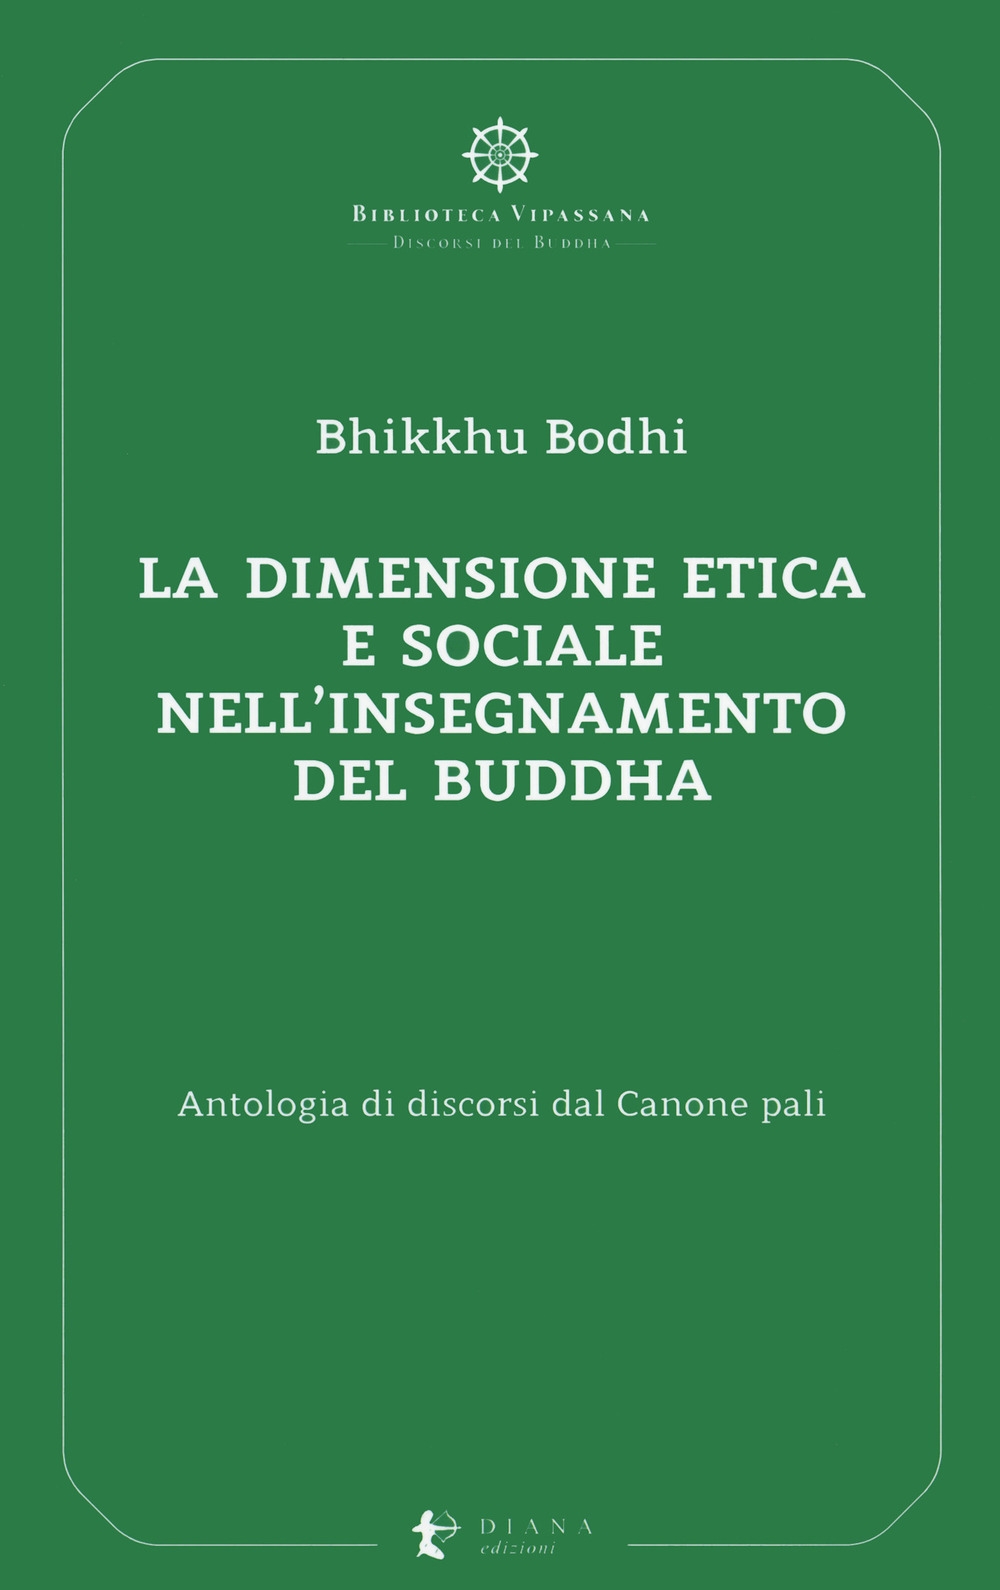 La dimensione etica e sociale nell'insegnamento del Buddha. Antologia di discorsi dal Canone pali